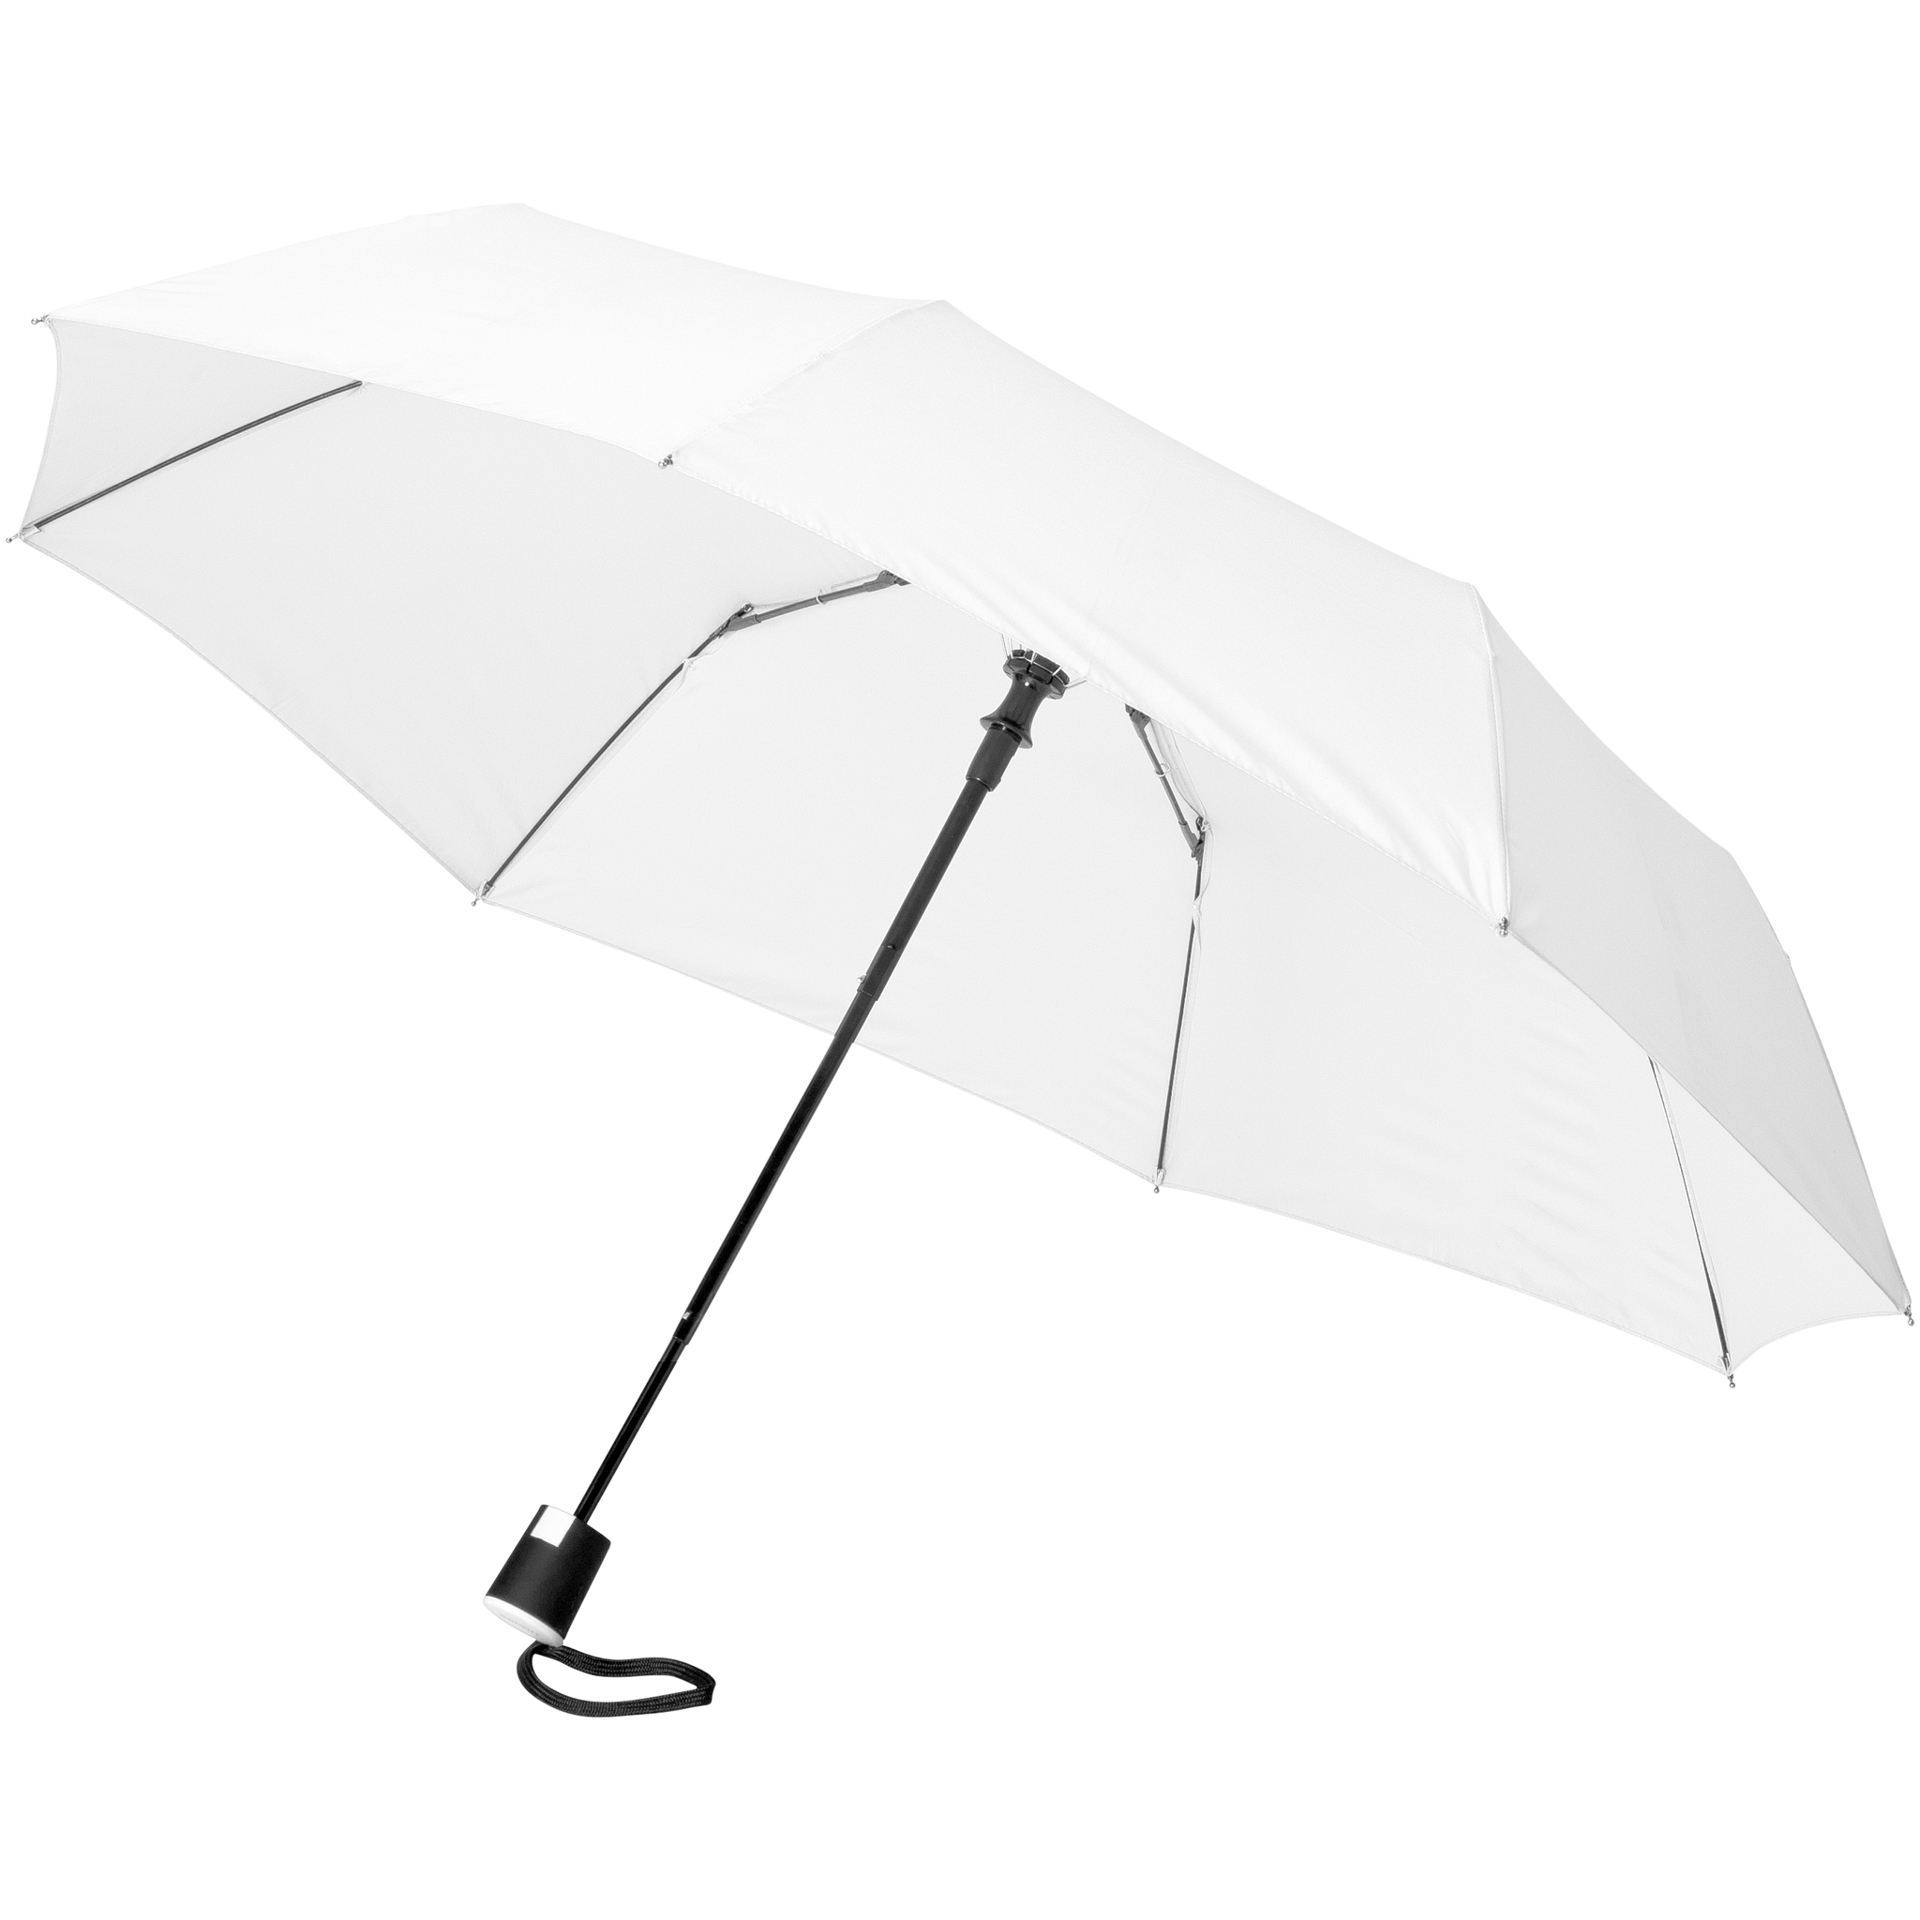 3 Section Auto Open Umbrella in white